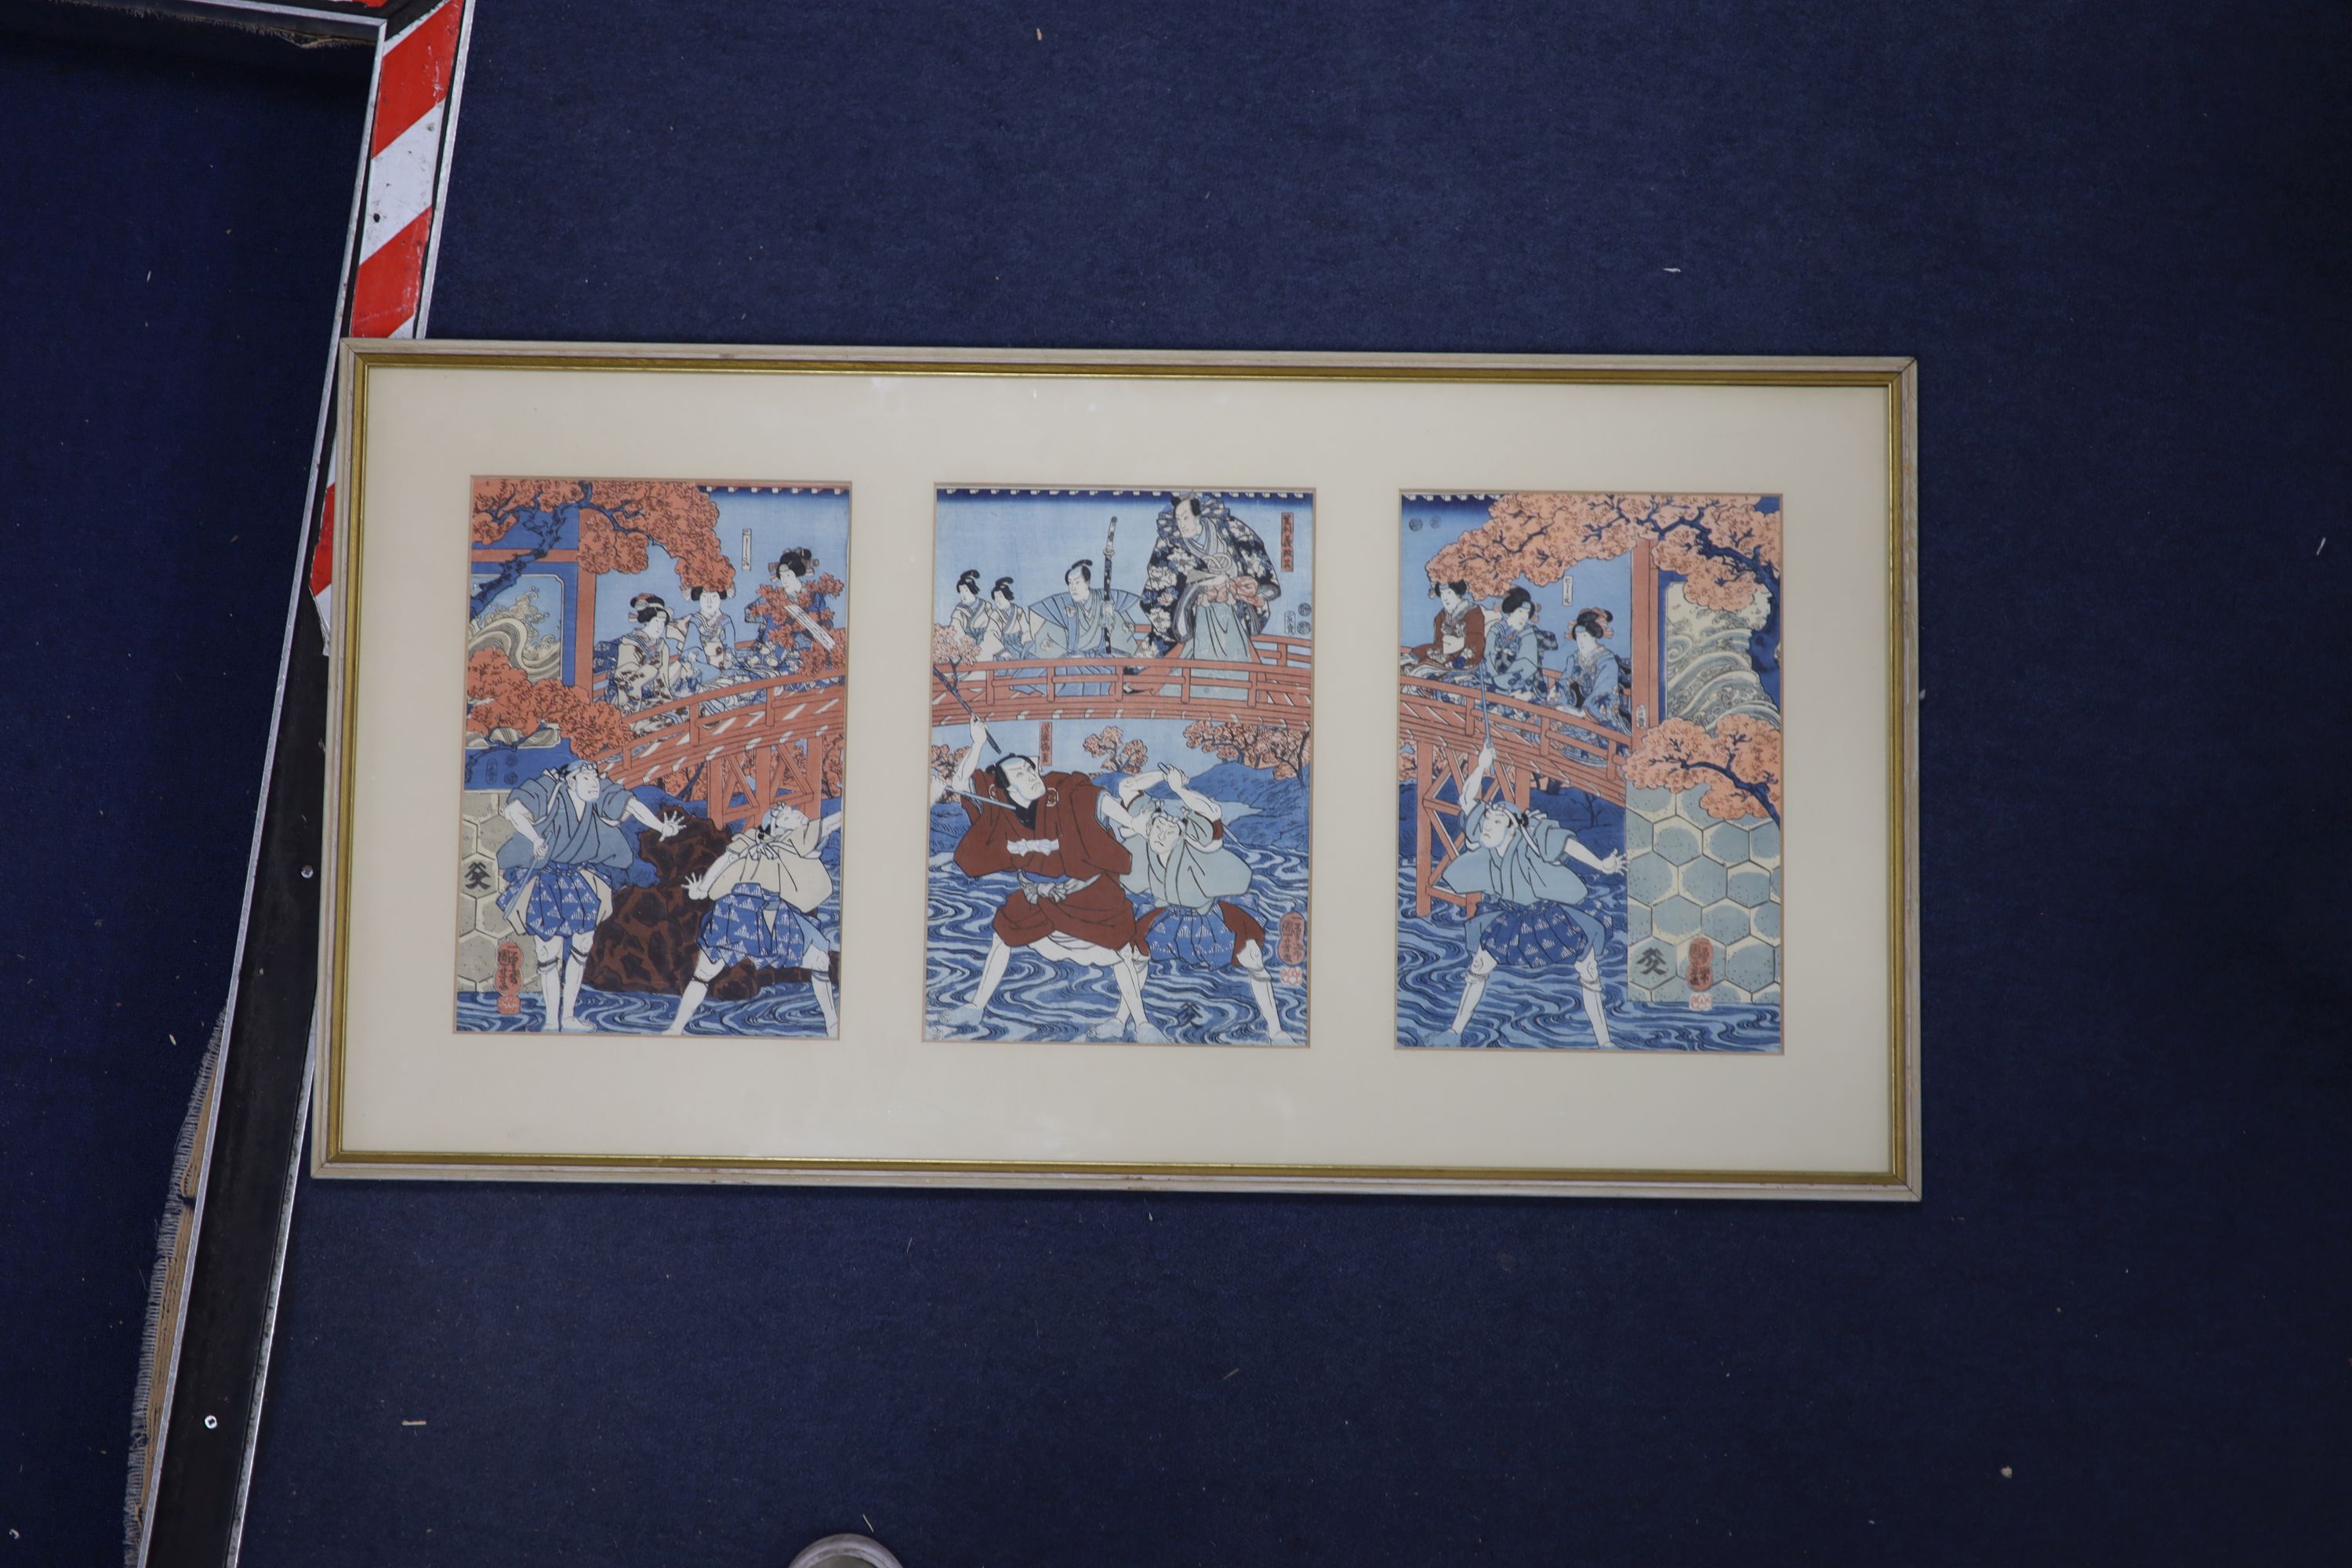 Kuniyoshi (1797-1861), three woodblock prints, Figures on a bridge, each 36 x 24cm, framed as one